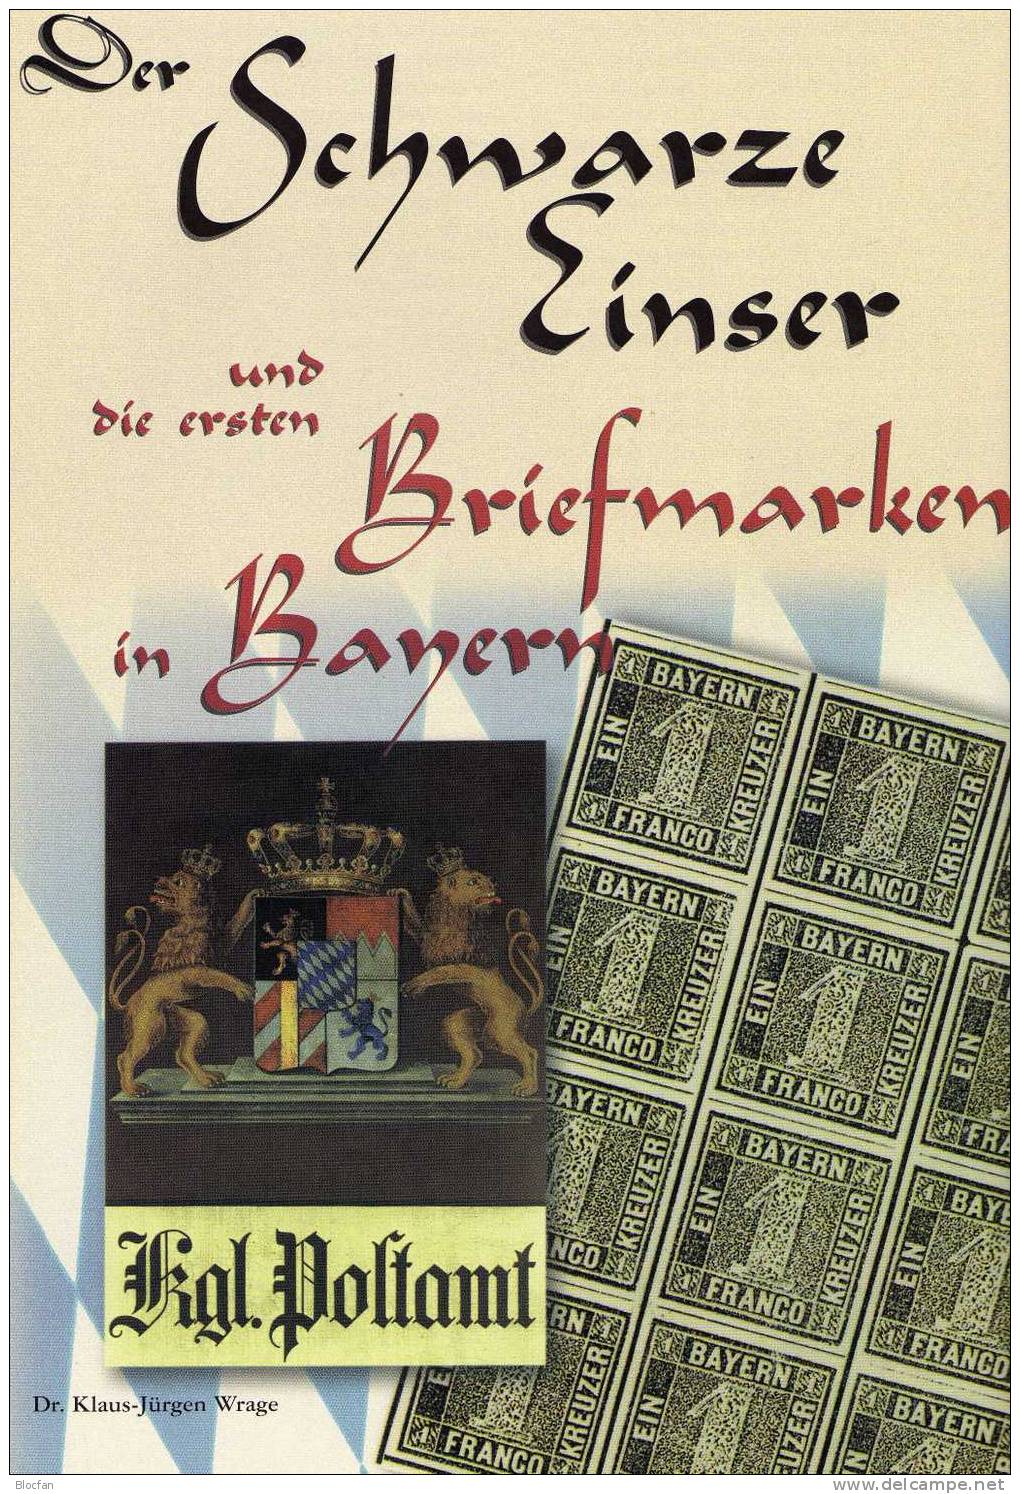 150 Jahre Deutsche Briefmarke1998 Antiquarisch 24€ Motivation Für Sammler Band I Als Enzyklopädie Und Fachbuch Wegweiser - Autres & Non Classés